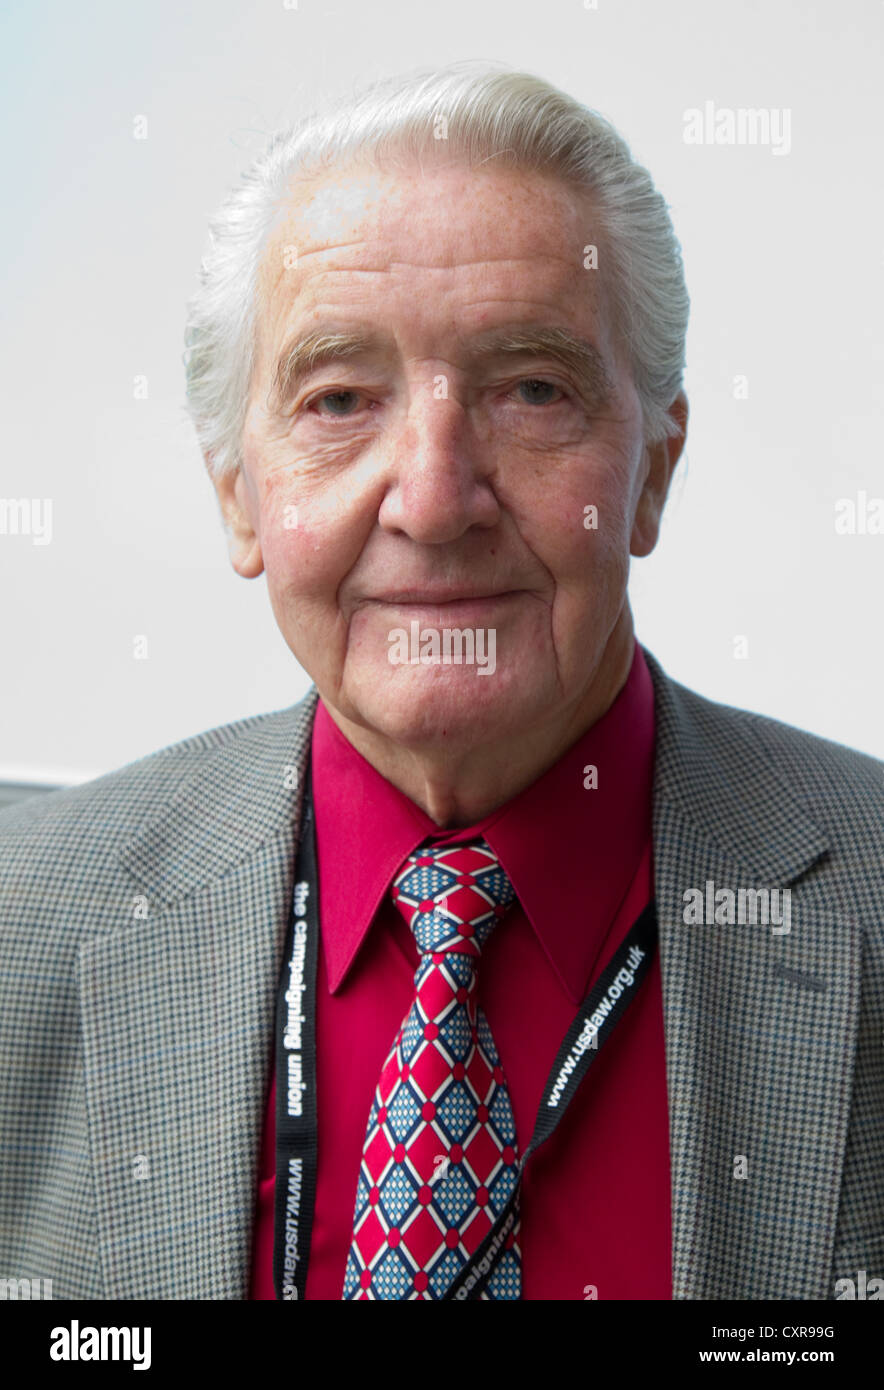 Dennis Skinner MP for Bolsover since 1970 Stock Photo